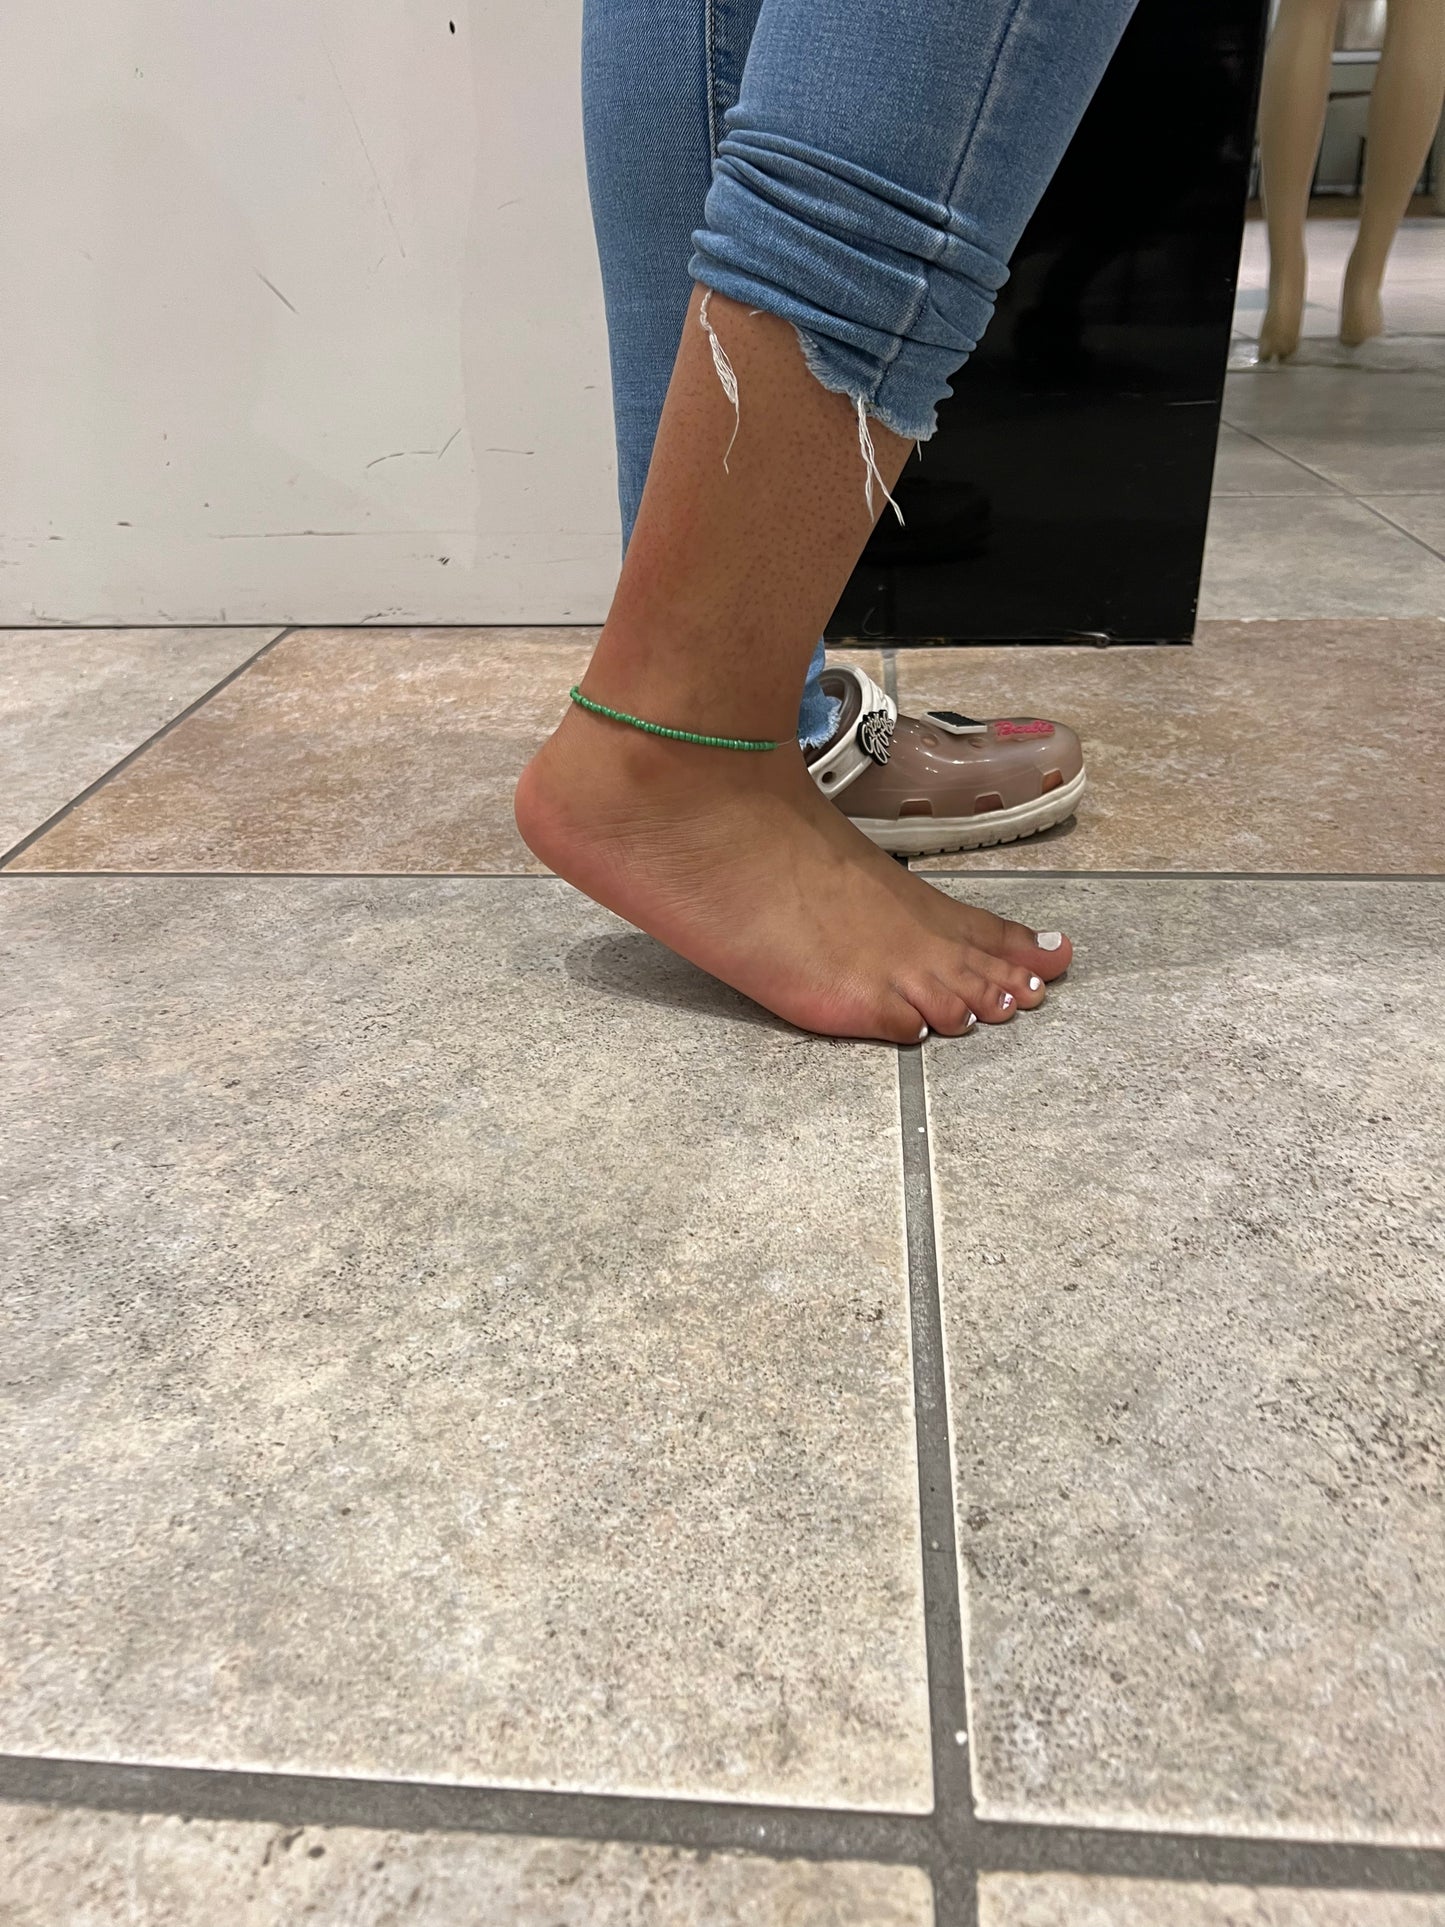 Money green anklet